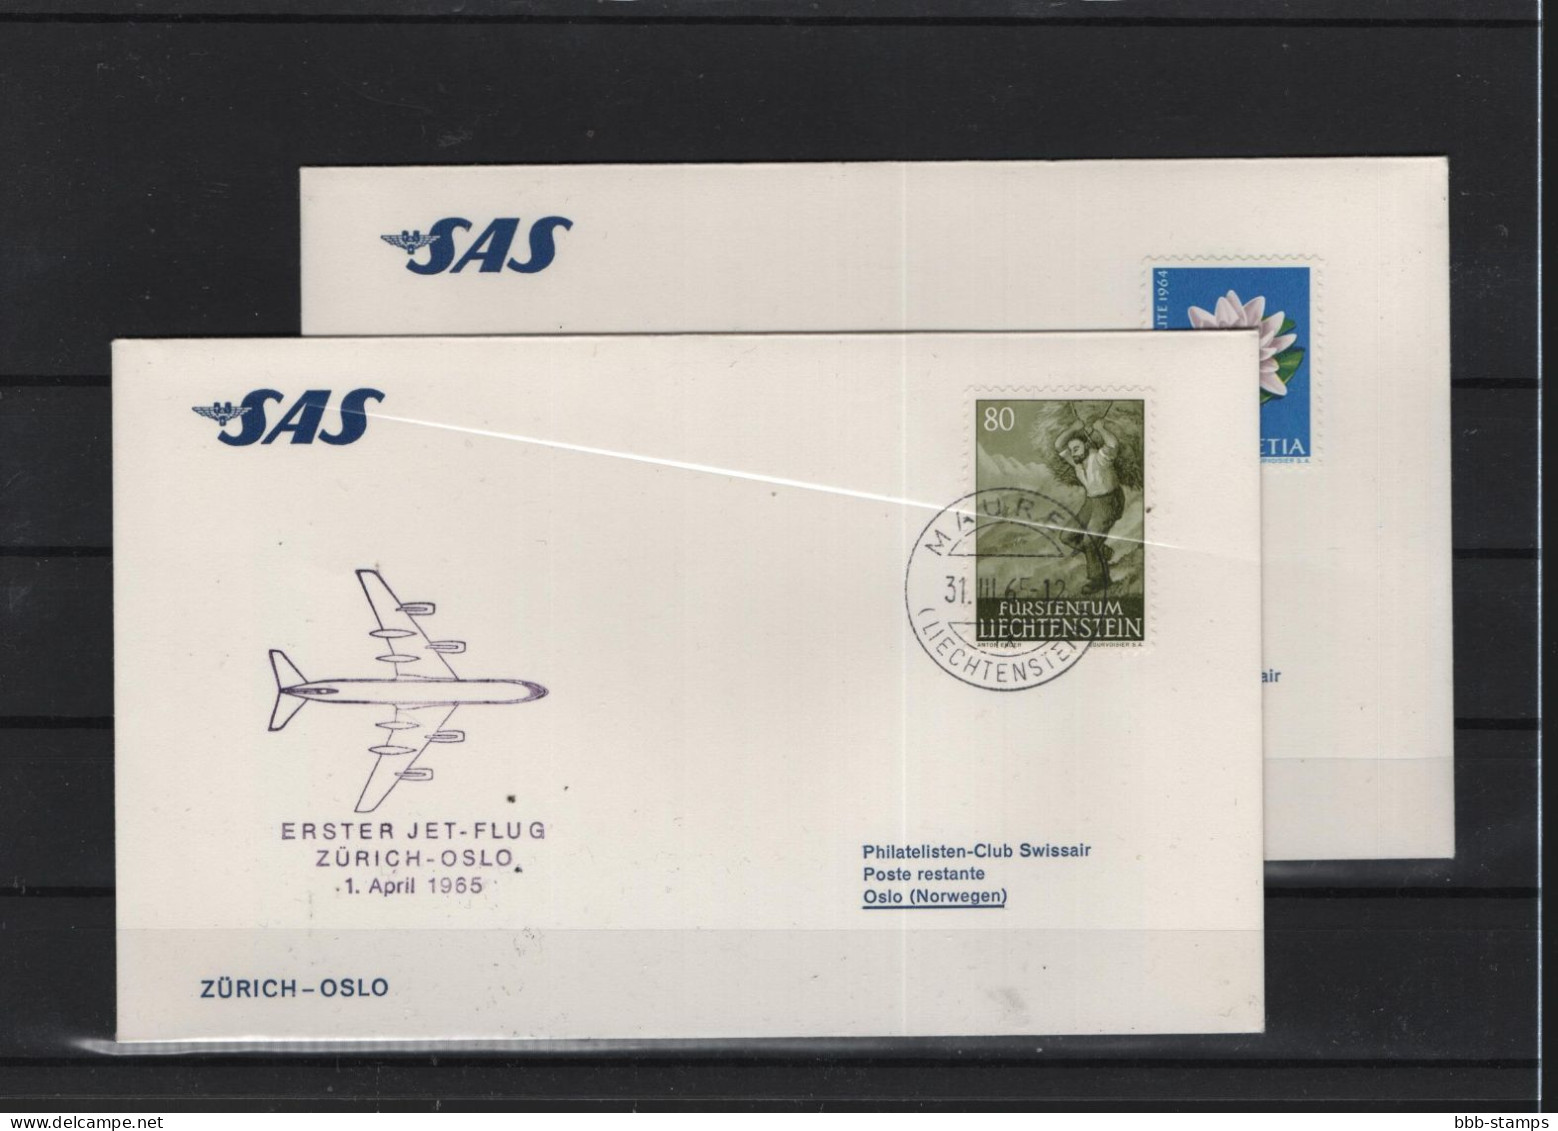 Schweiz Luftpost FFC SAS  1.4.1965 Zürich - Oslo - Erst- U. Sonderflugbriefe